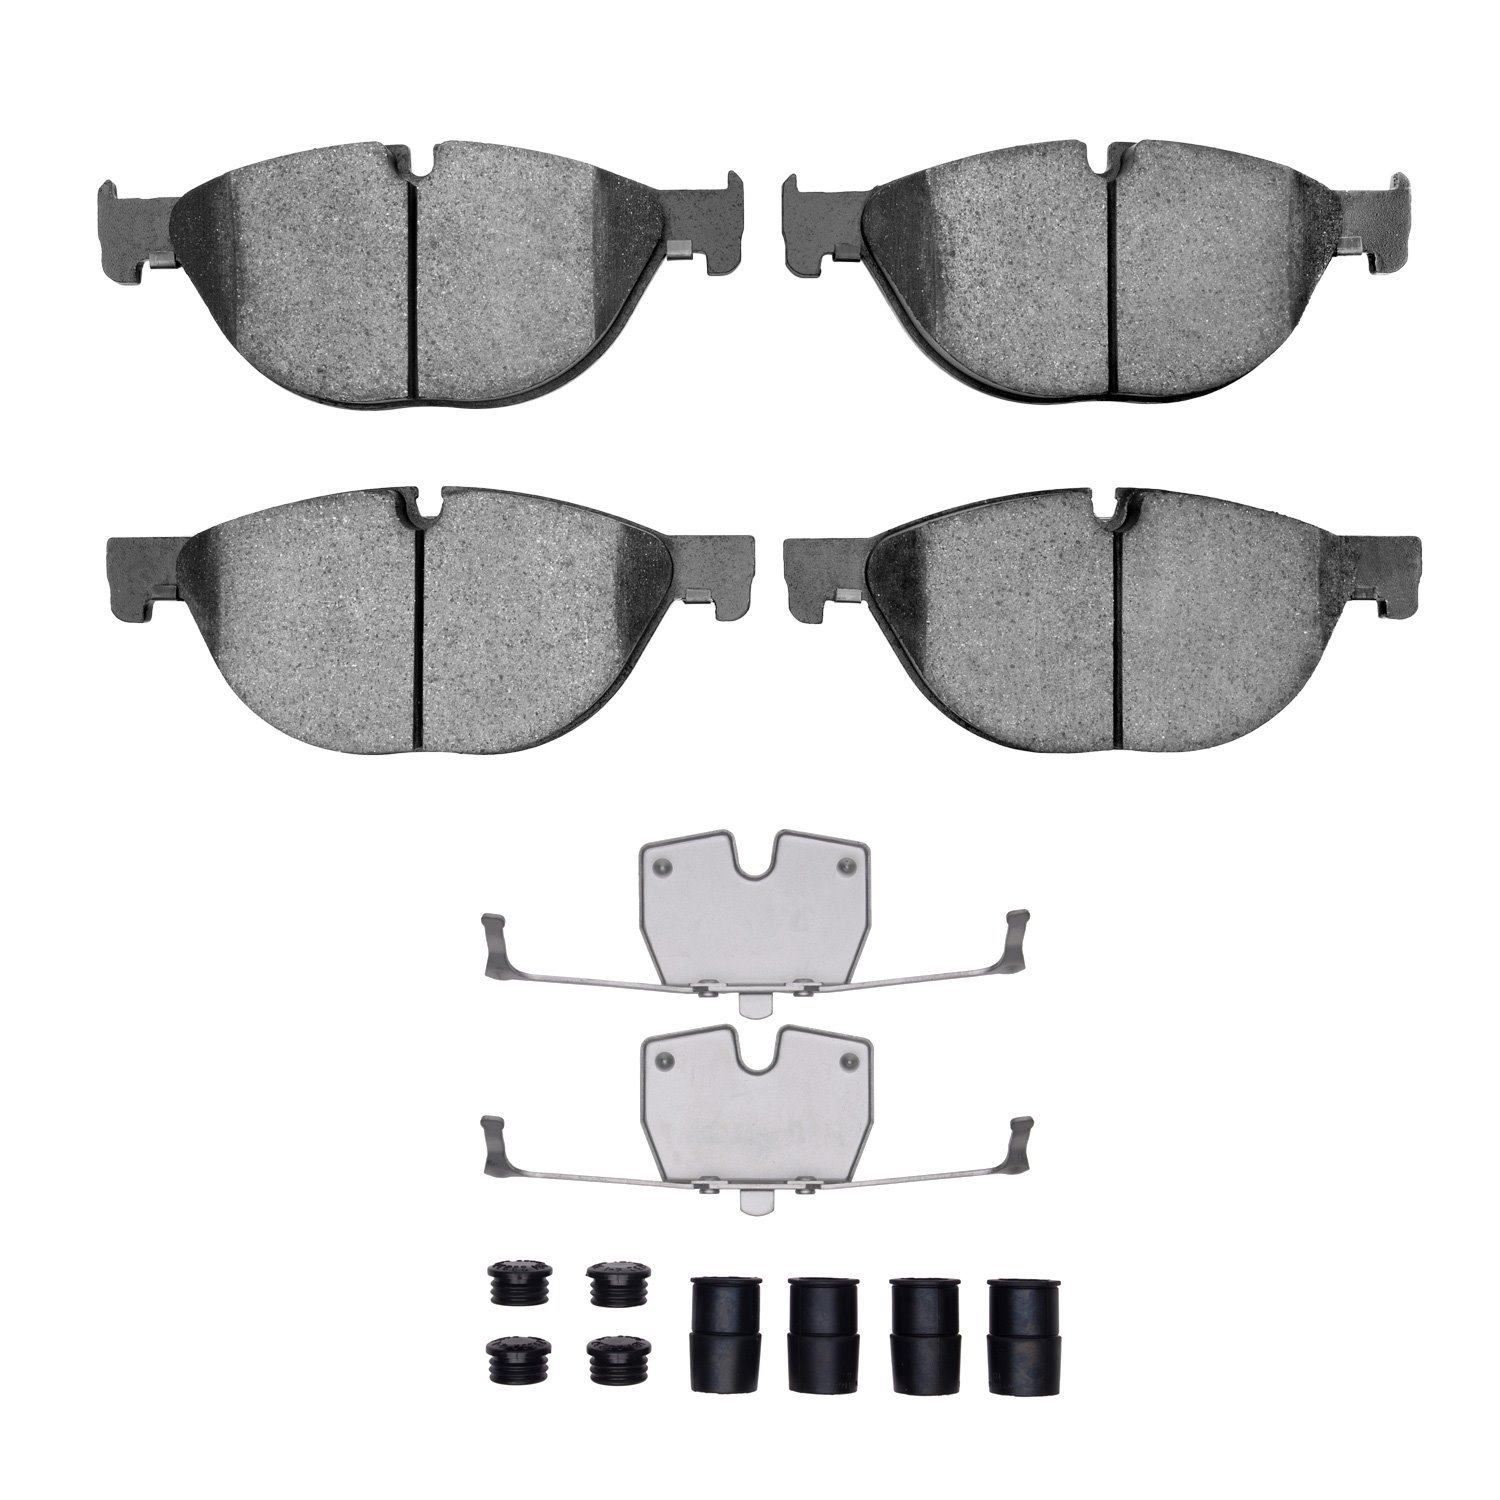 1600-1409-01 5000 Euro Ceramic Brake Pads & Hardware Kit, 2009-2018 BMW, Position: Front